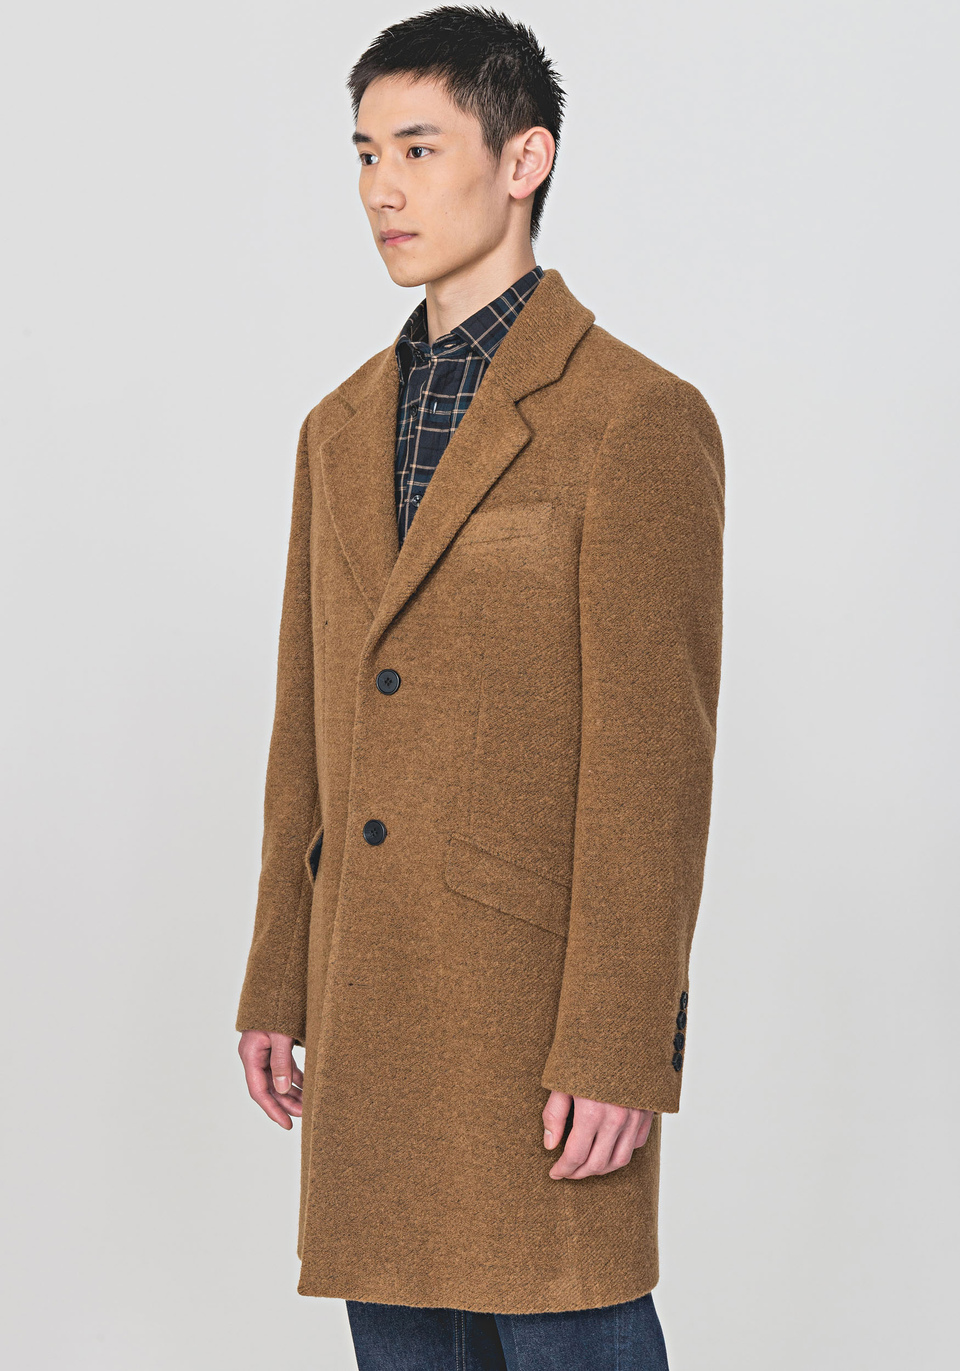 LONGLINE COAT IN A WARM WOOL BLEND - Antony Morato Online Shop